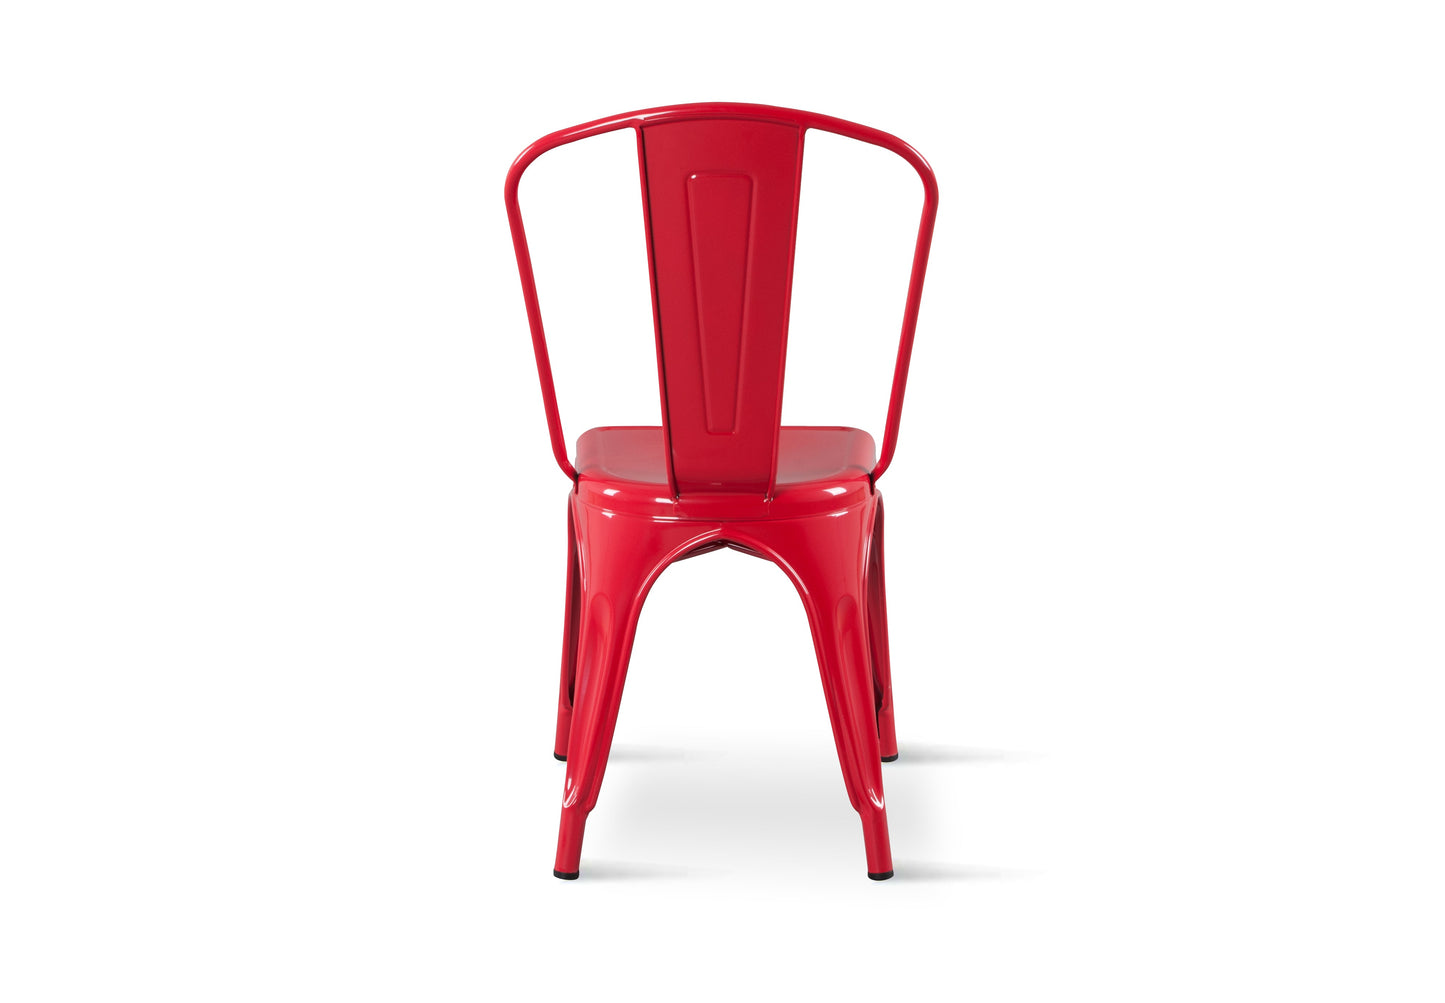 Chaise style industriel en métal rouge - Finition brillant